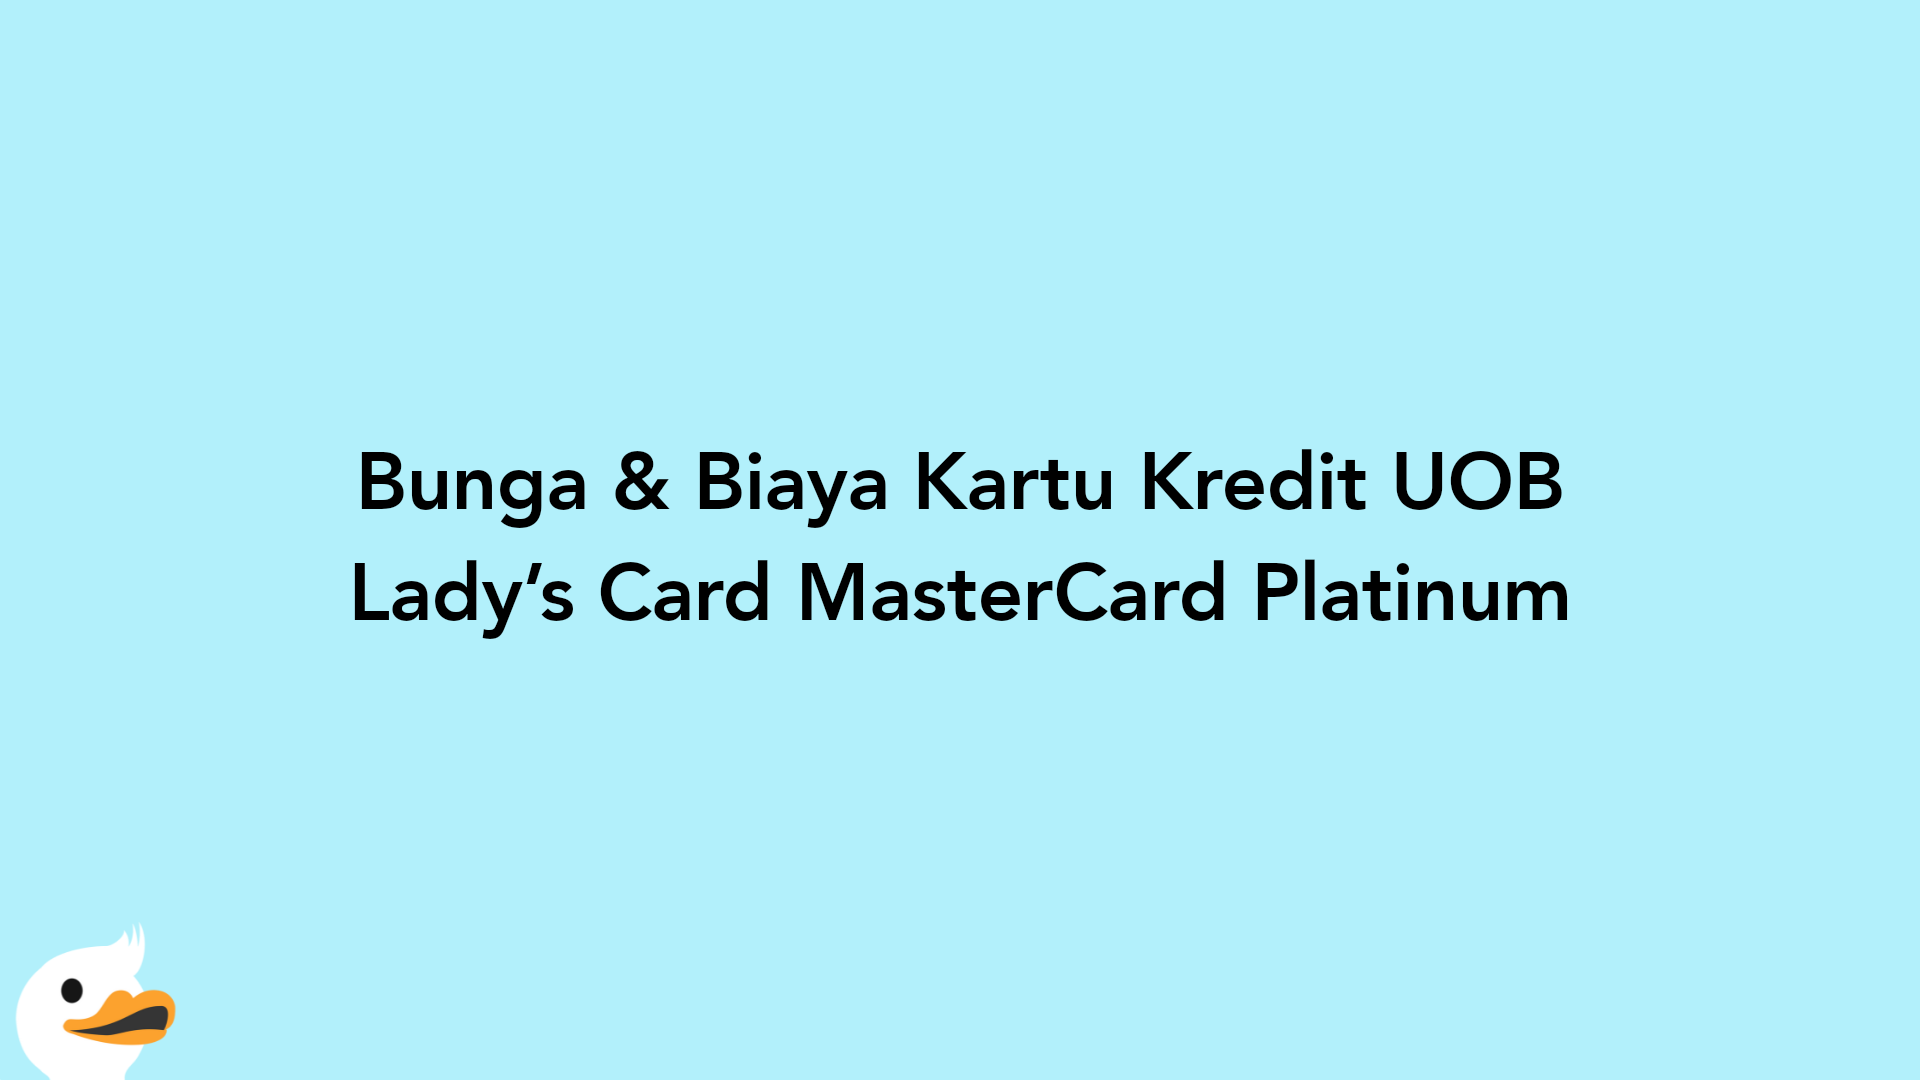 Bunga & Biaya Kartu Kredit UOB Lady’s Card MasterCard Platinum